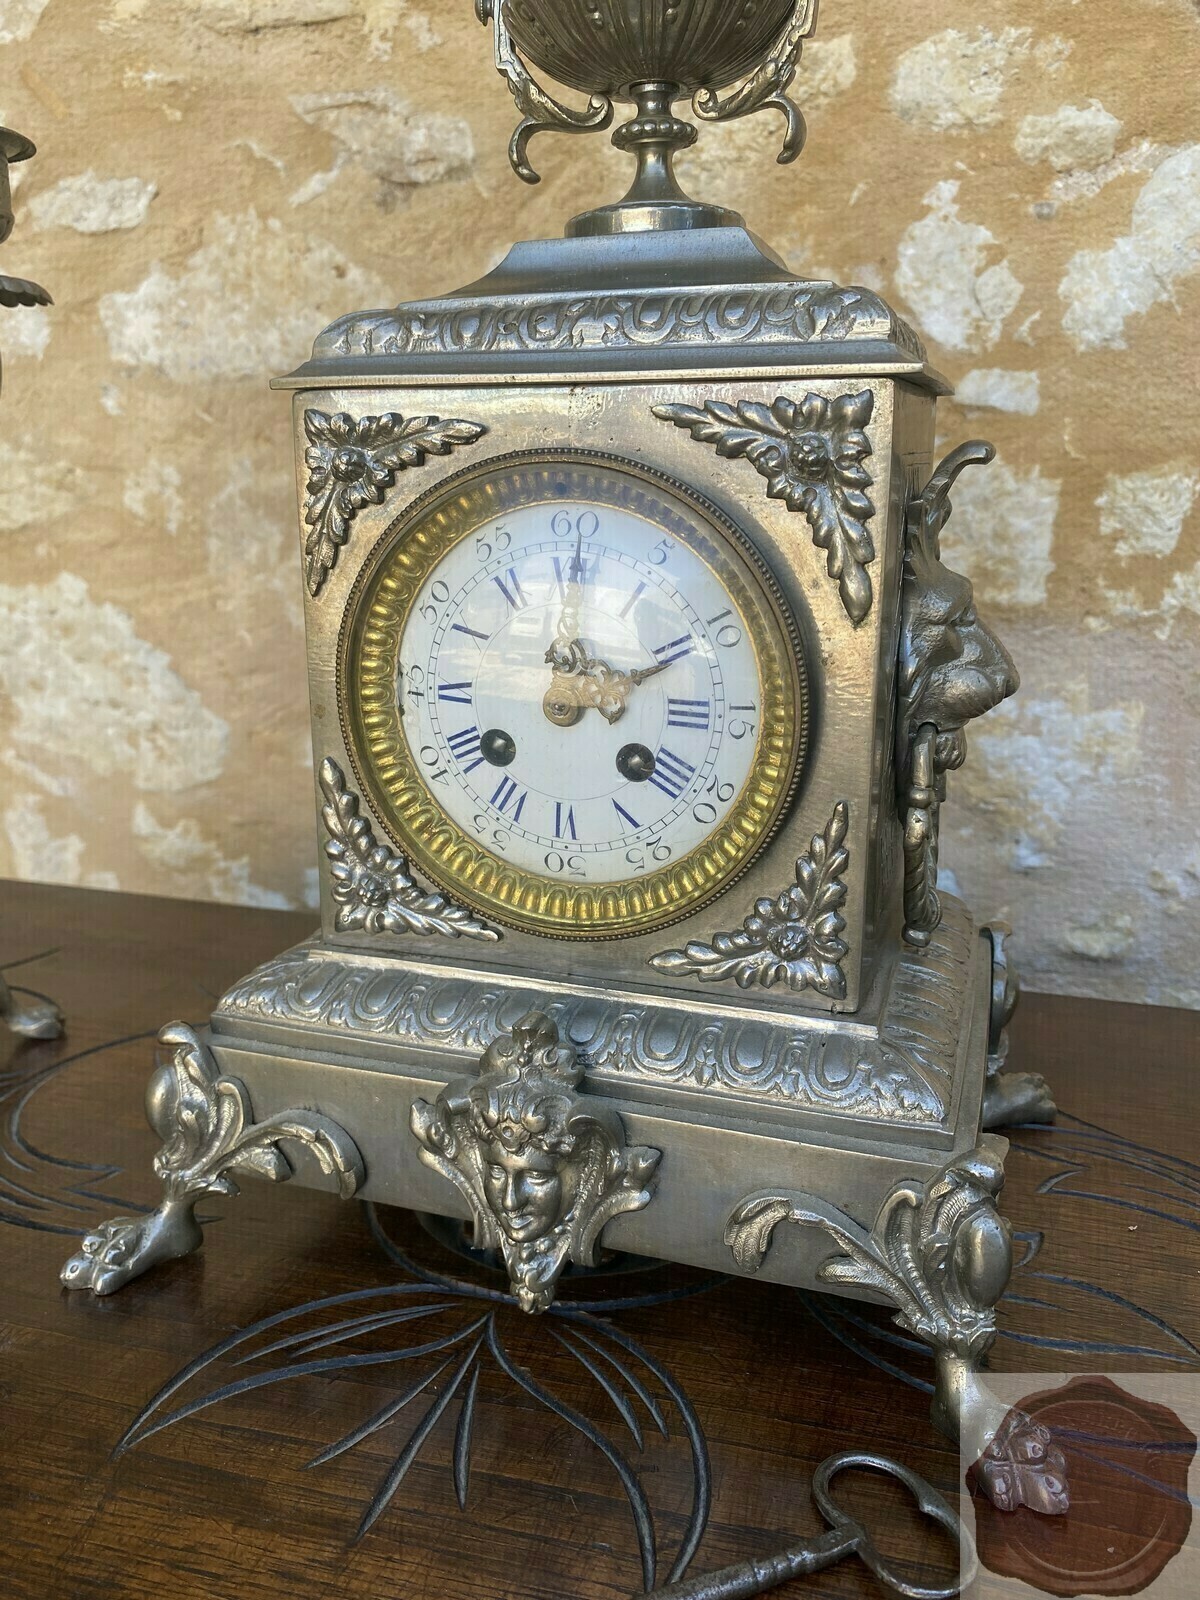 Купить часы на авито в спб. Старинные настольные часы. Антикварный настольный набор. Часы антиквариат консольные. Омега часы старинные настольные.